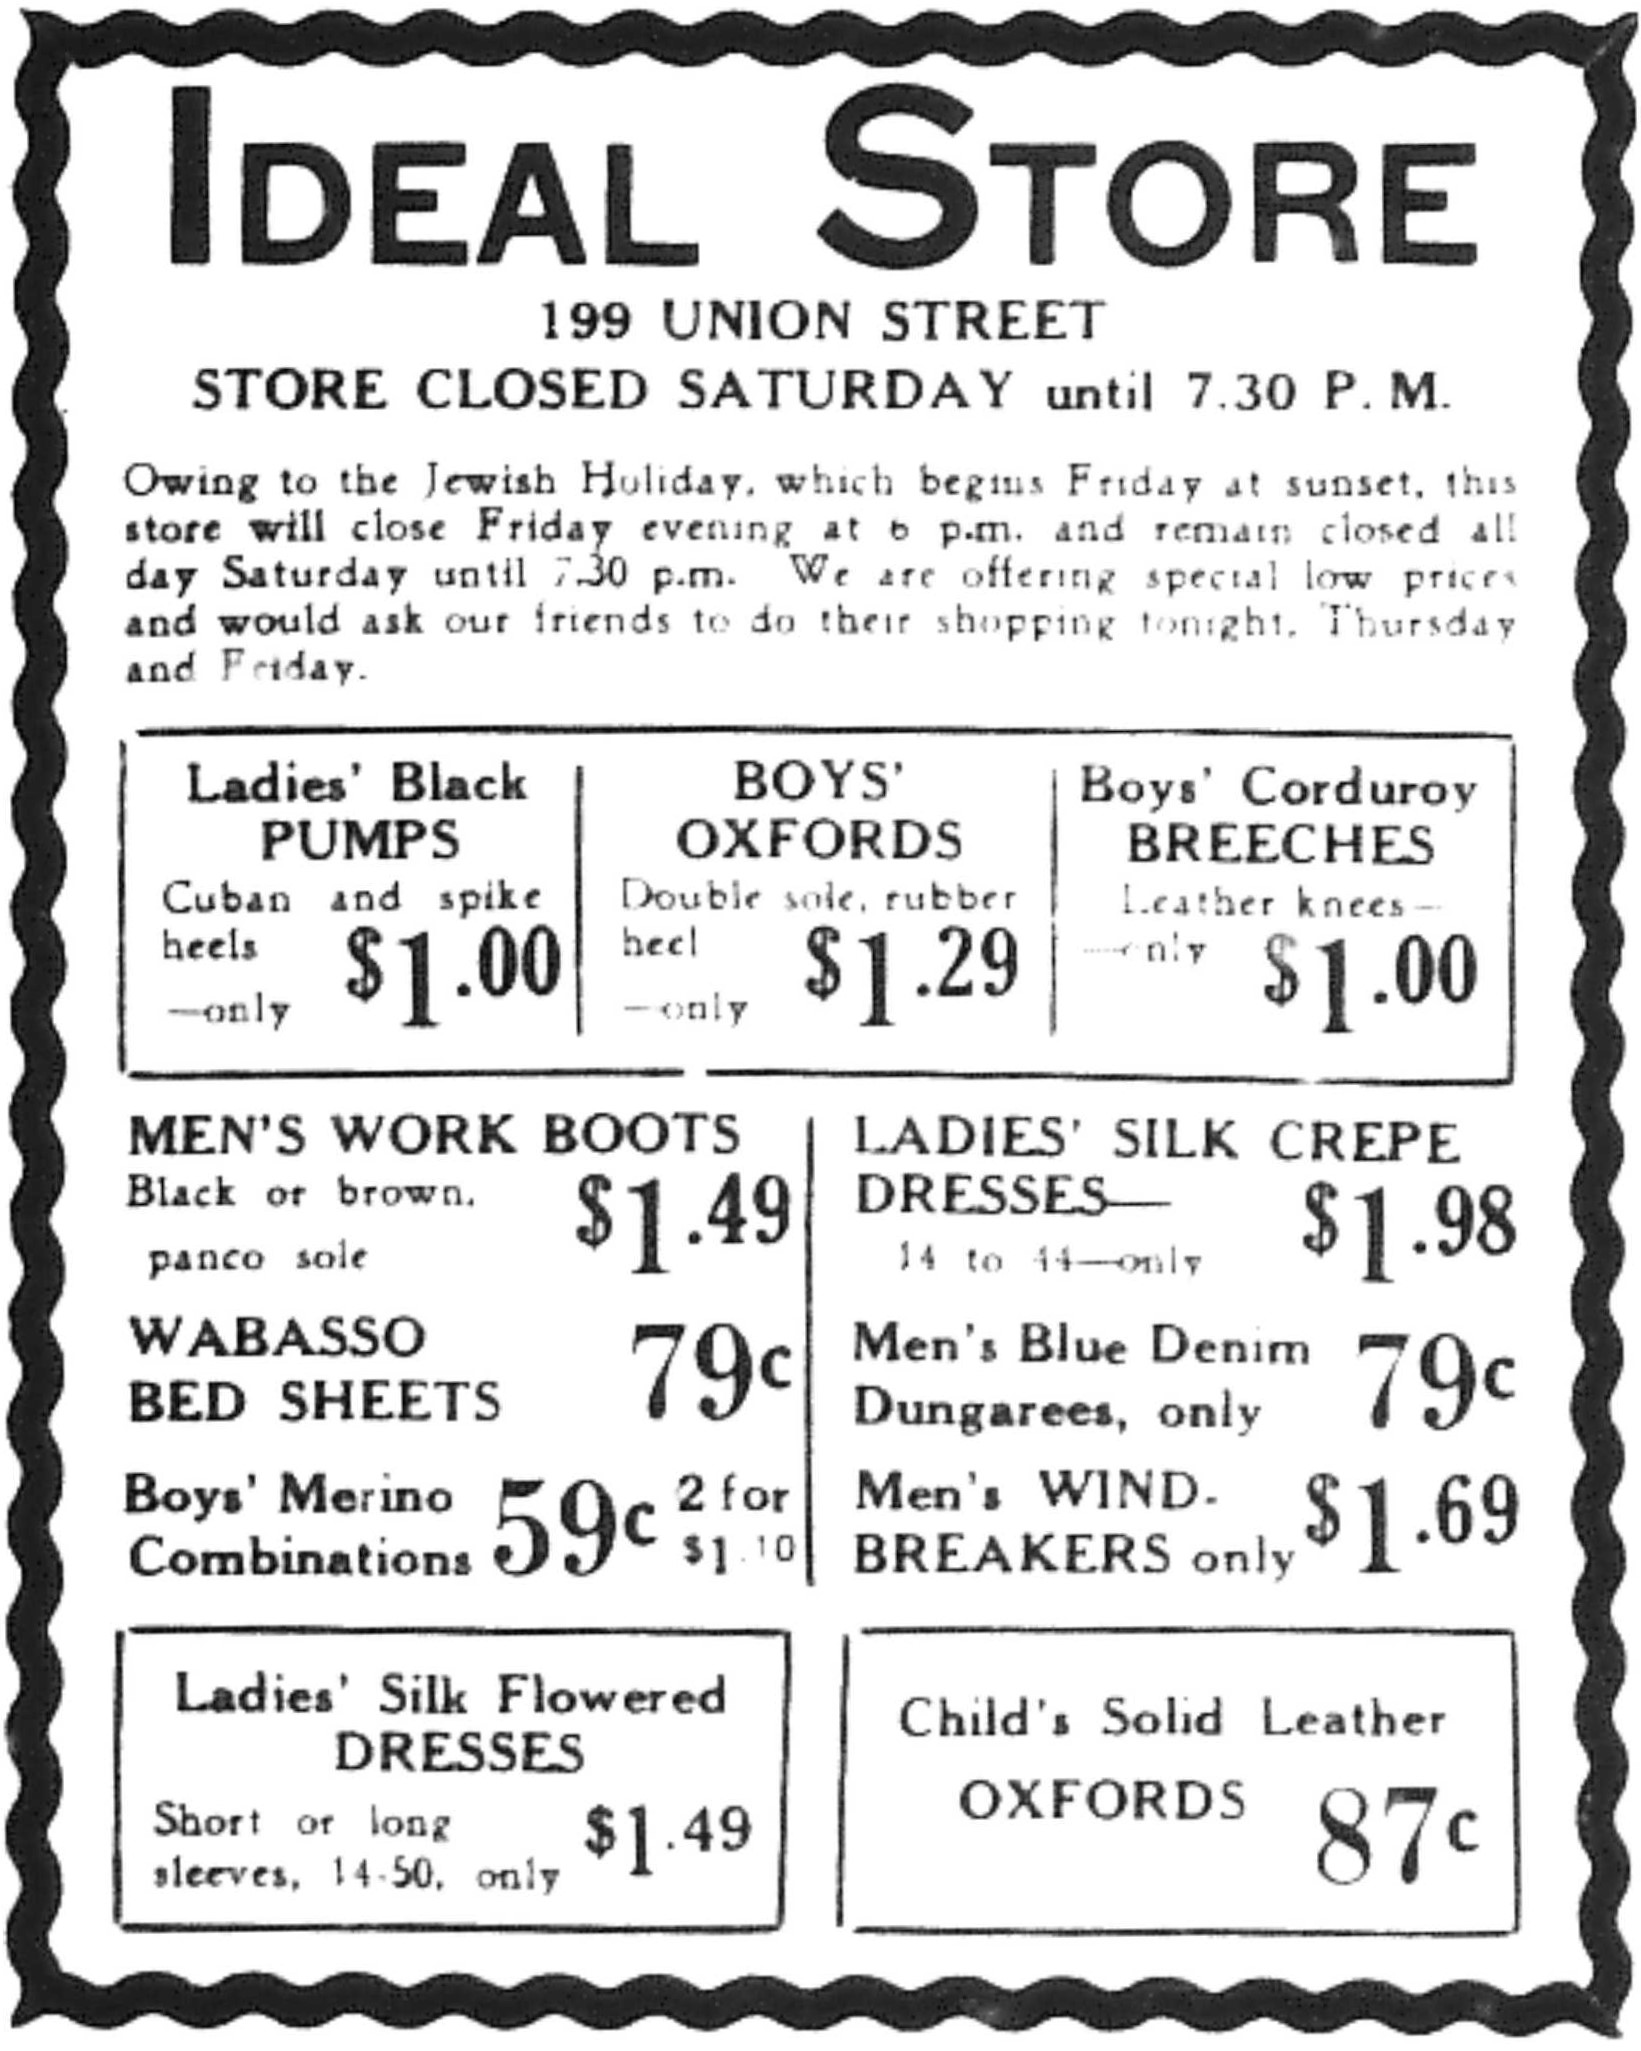 Publicité de presse intitulée « Ideal Store », contenant une liste de chaussures, de vêtements pour hommes et femmes et d’articles de literie avec les prix.